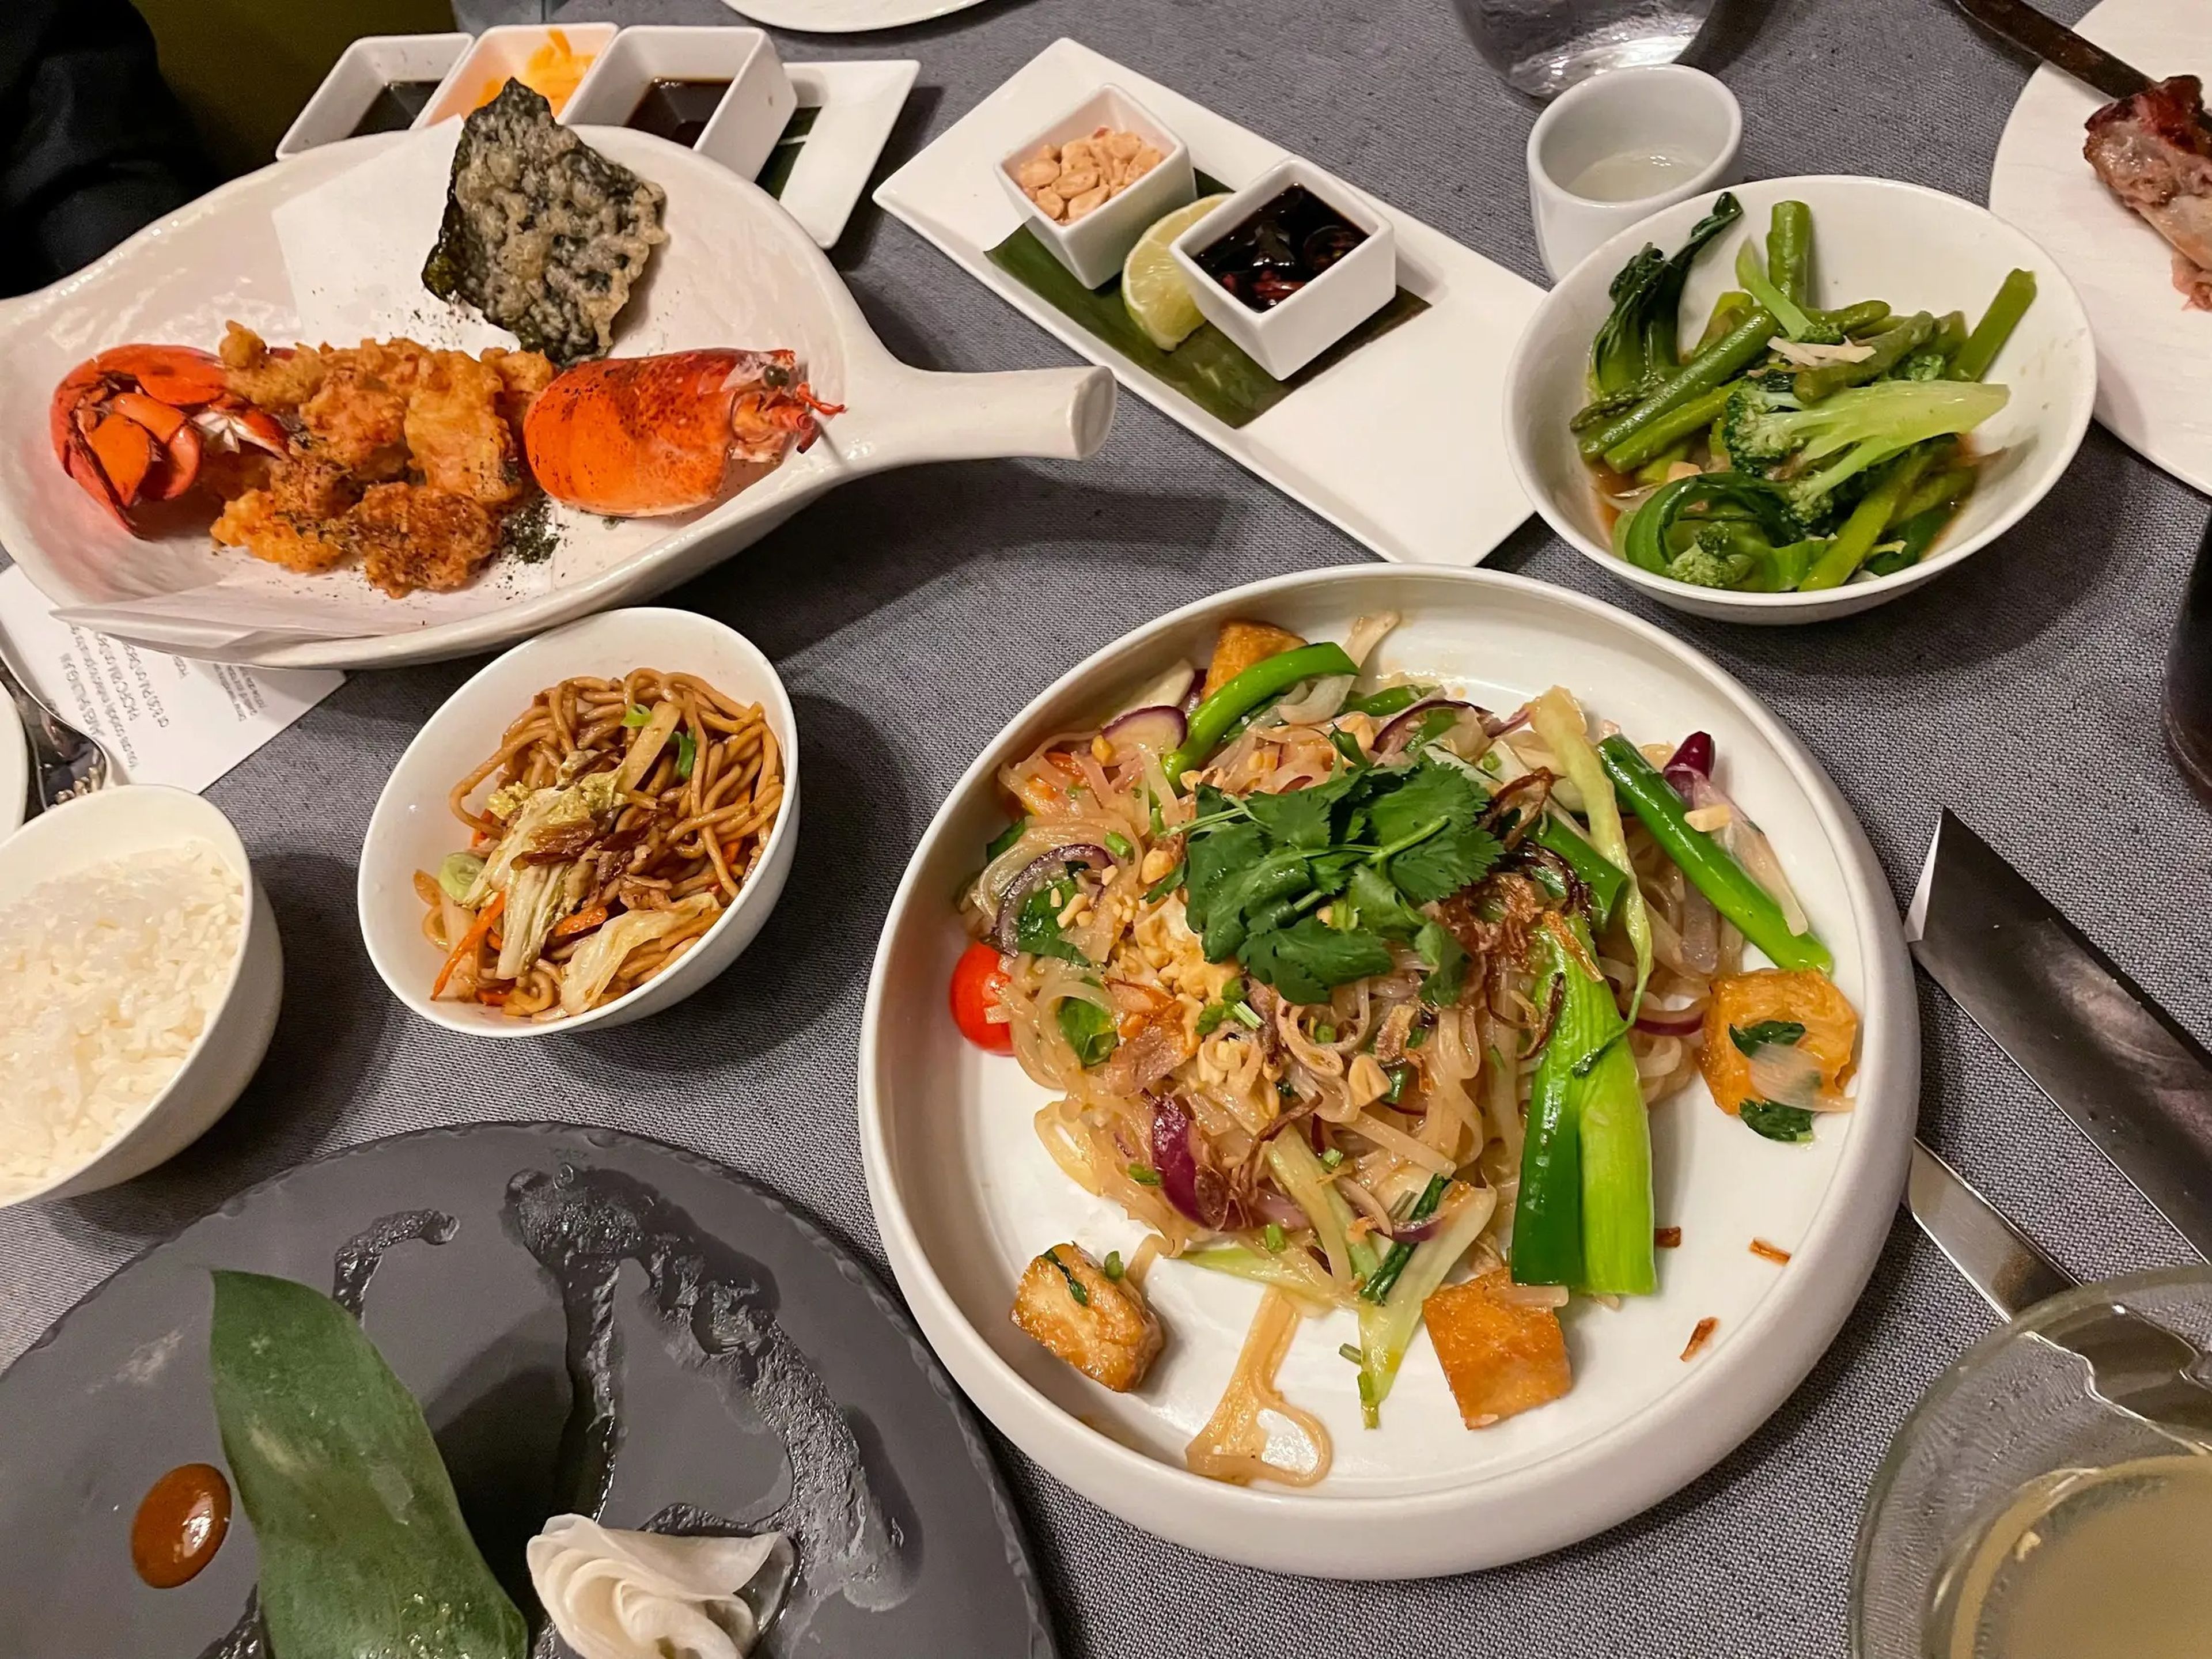 El restaurante panasiático Pacific Rim ofrece opciones como pad thai vegetariano y langosta frita.